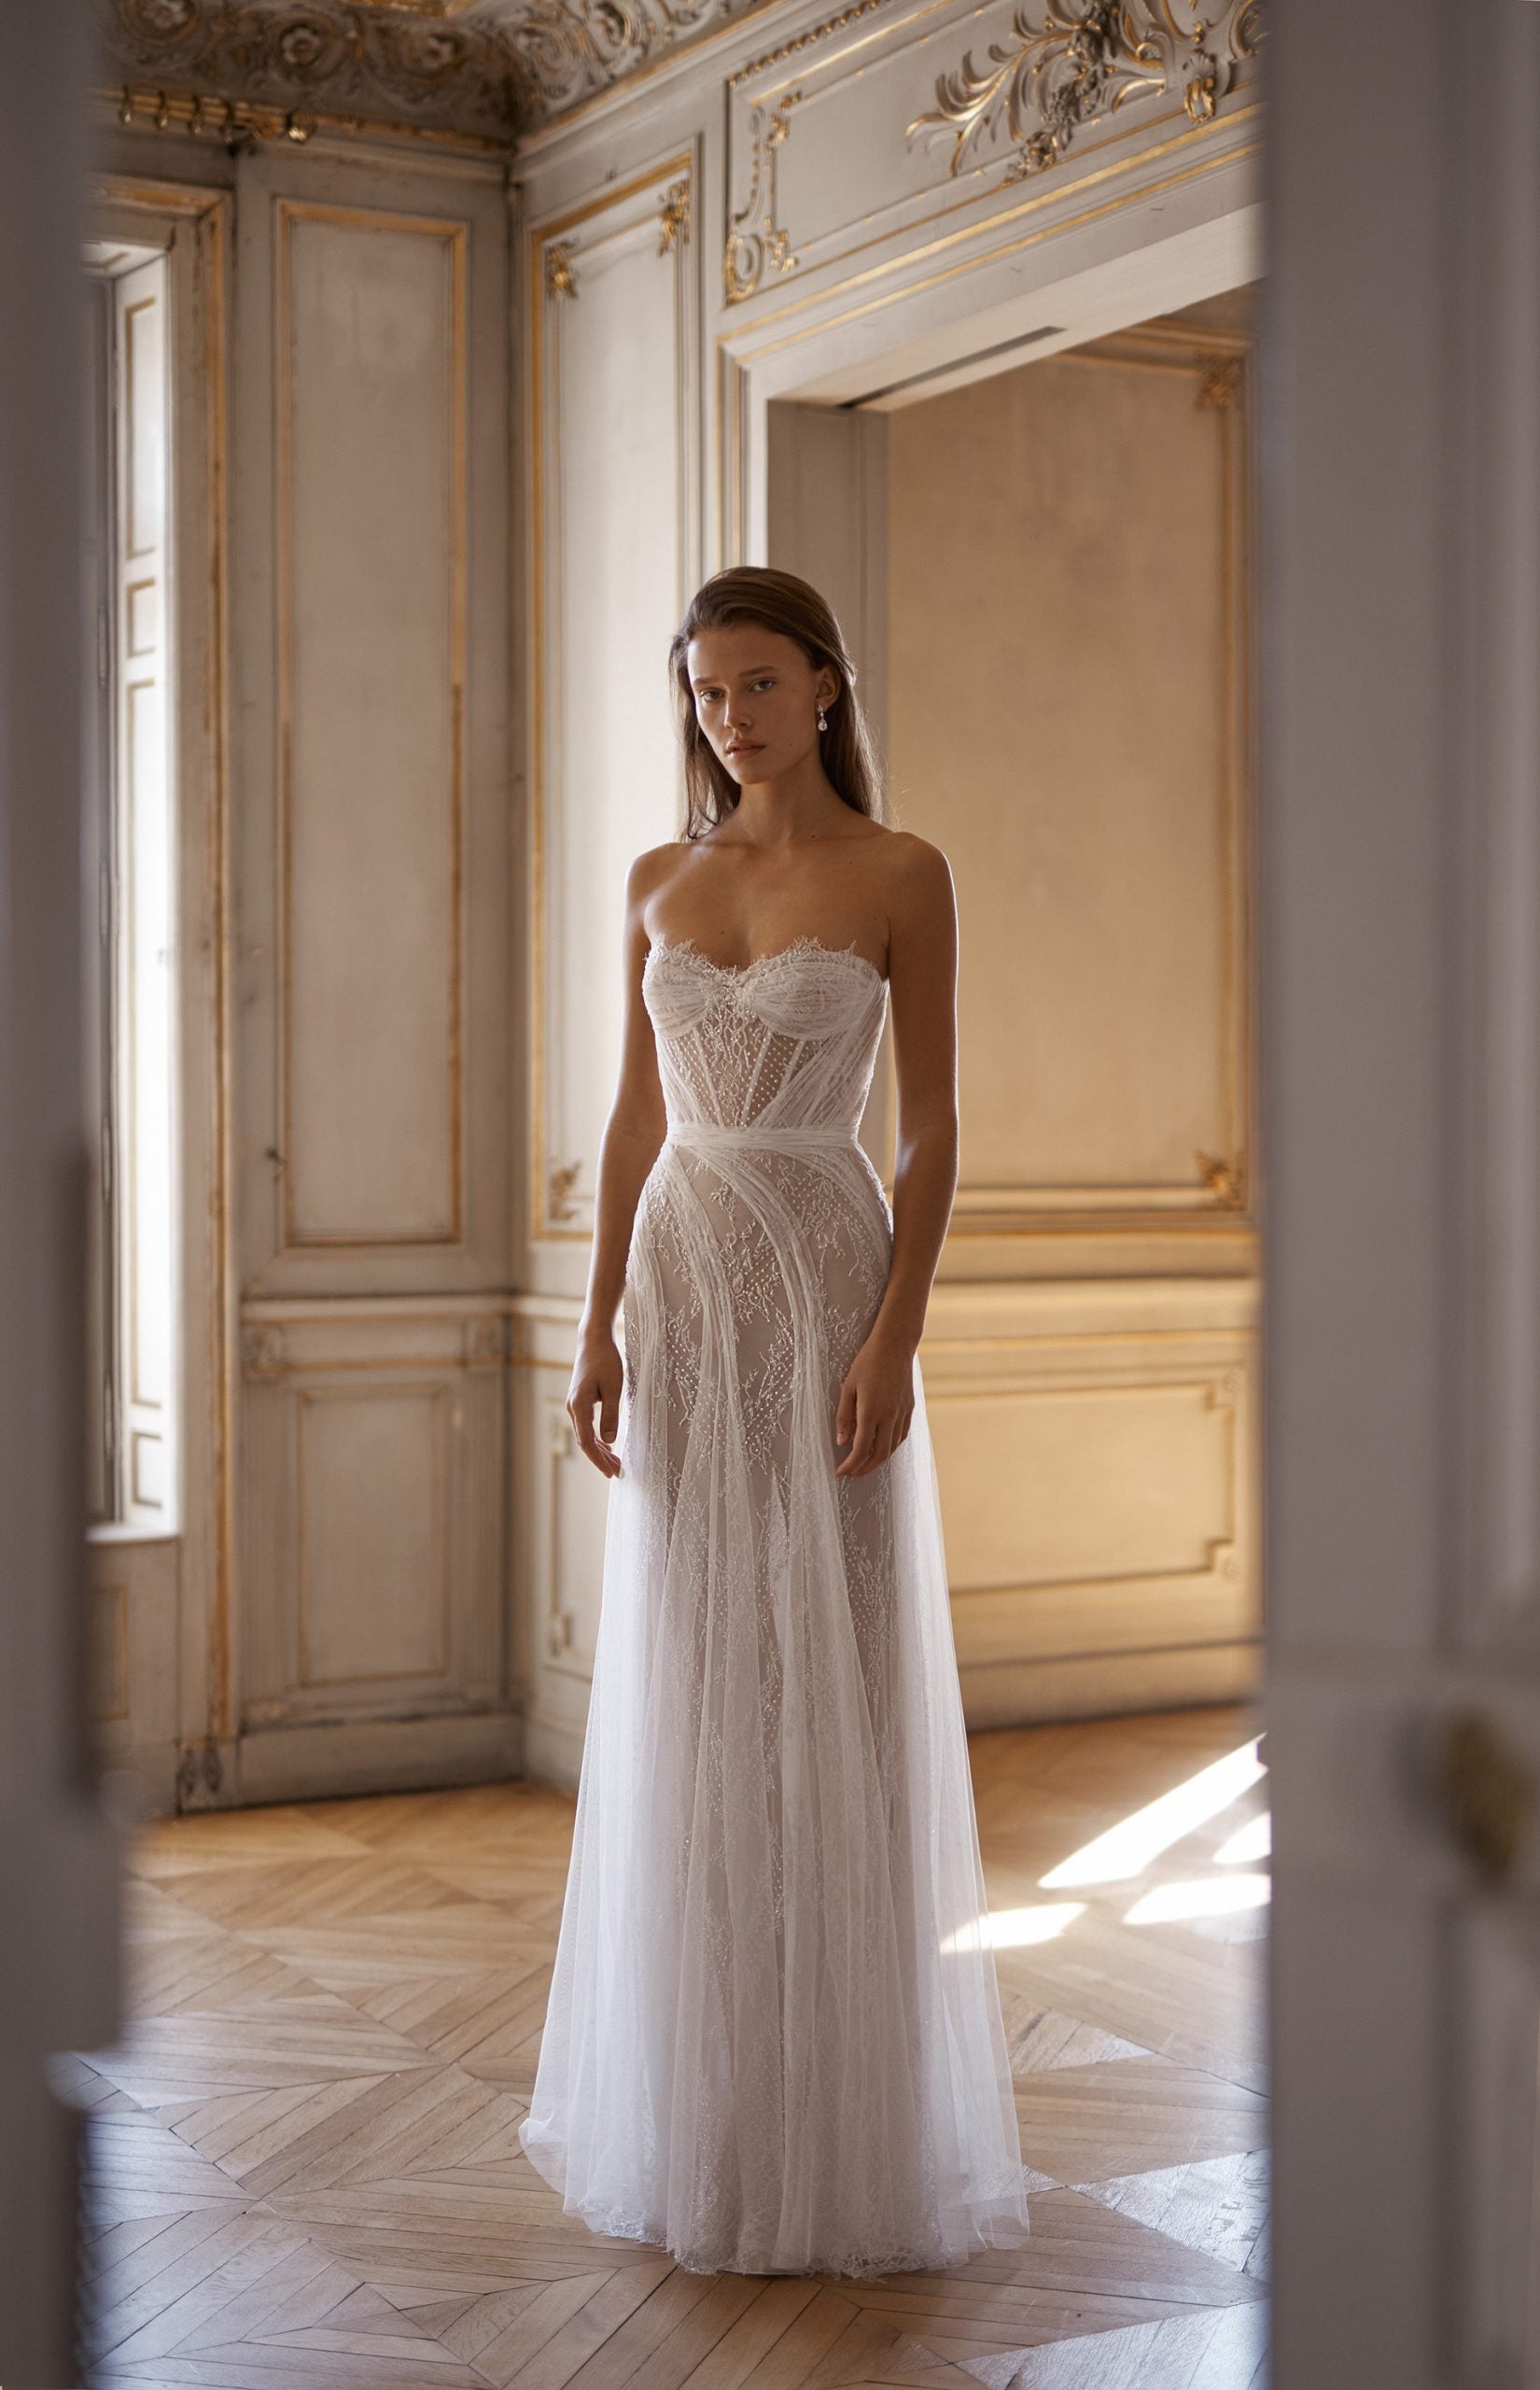 Unique Lace And Tulle A-Line Gown by Alon Livné - Image 1